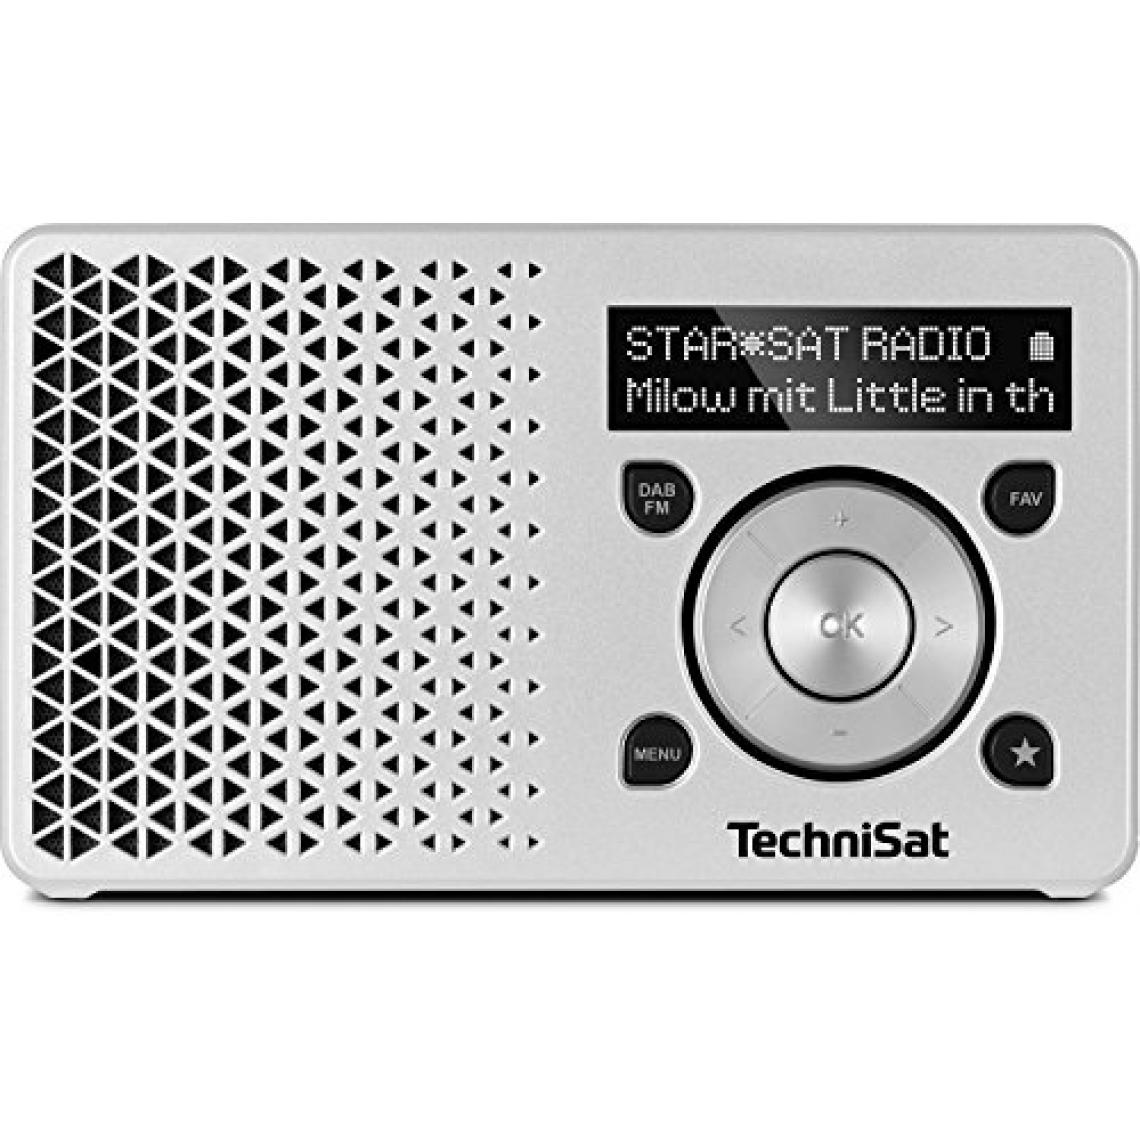 Technisat - TechniSat Digit Radio 1/Digital Radio fabriqué en Allemagne (Petit, portable, pour extérieur) avec haut-parleur avec écran OLED, DAB +, radio FM, Favorit mémoire et batterie puissante - Radio